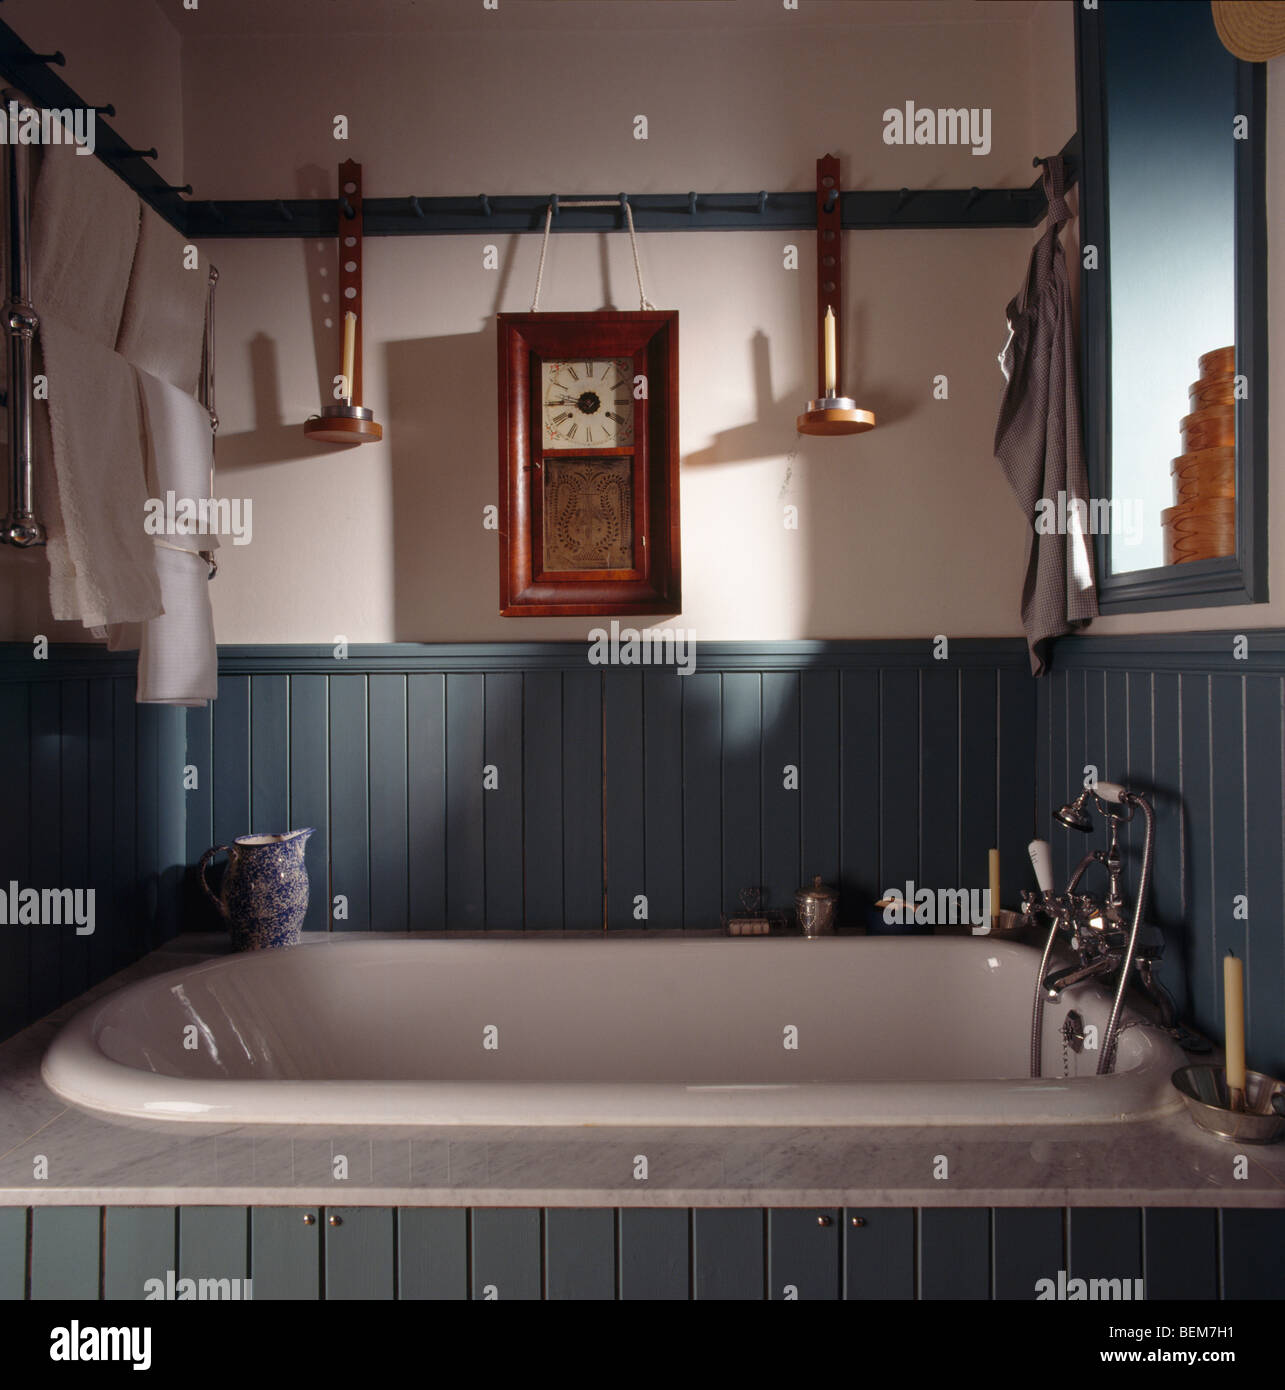 Holzrahmen Uhr unterbrochen von der Schiene über weiße Bad im grünen  Dado-getäfelten Shaker-Stil Badezimmer Stockfotografie - Alamy